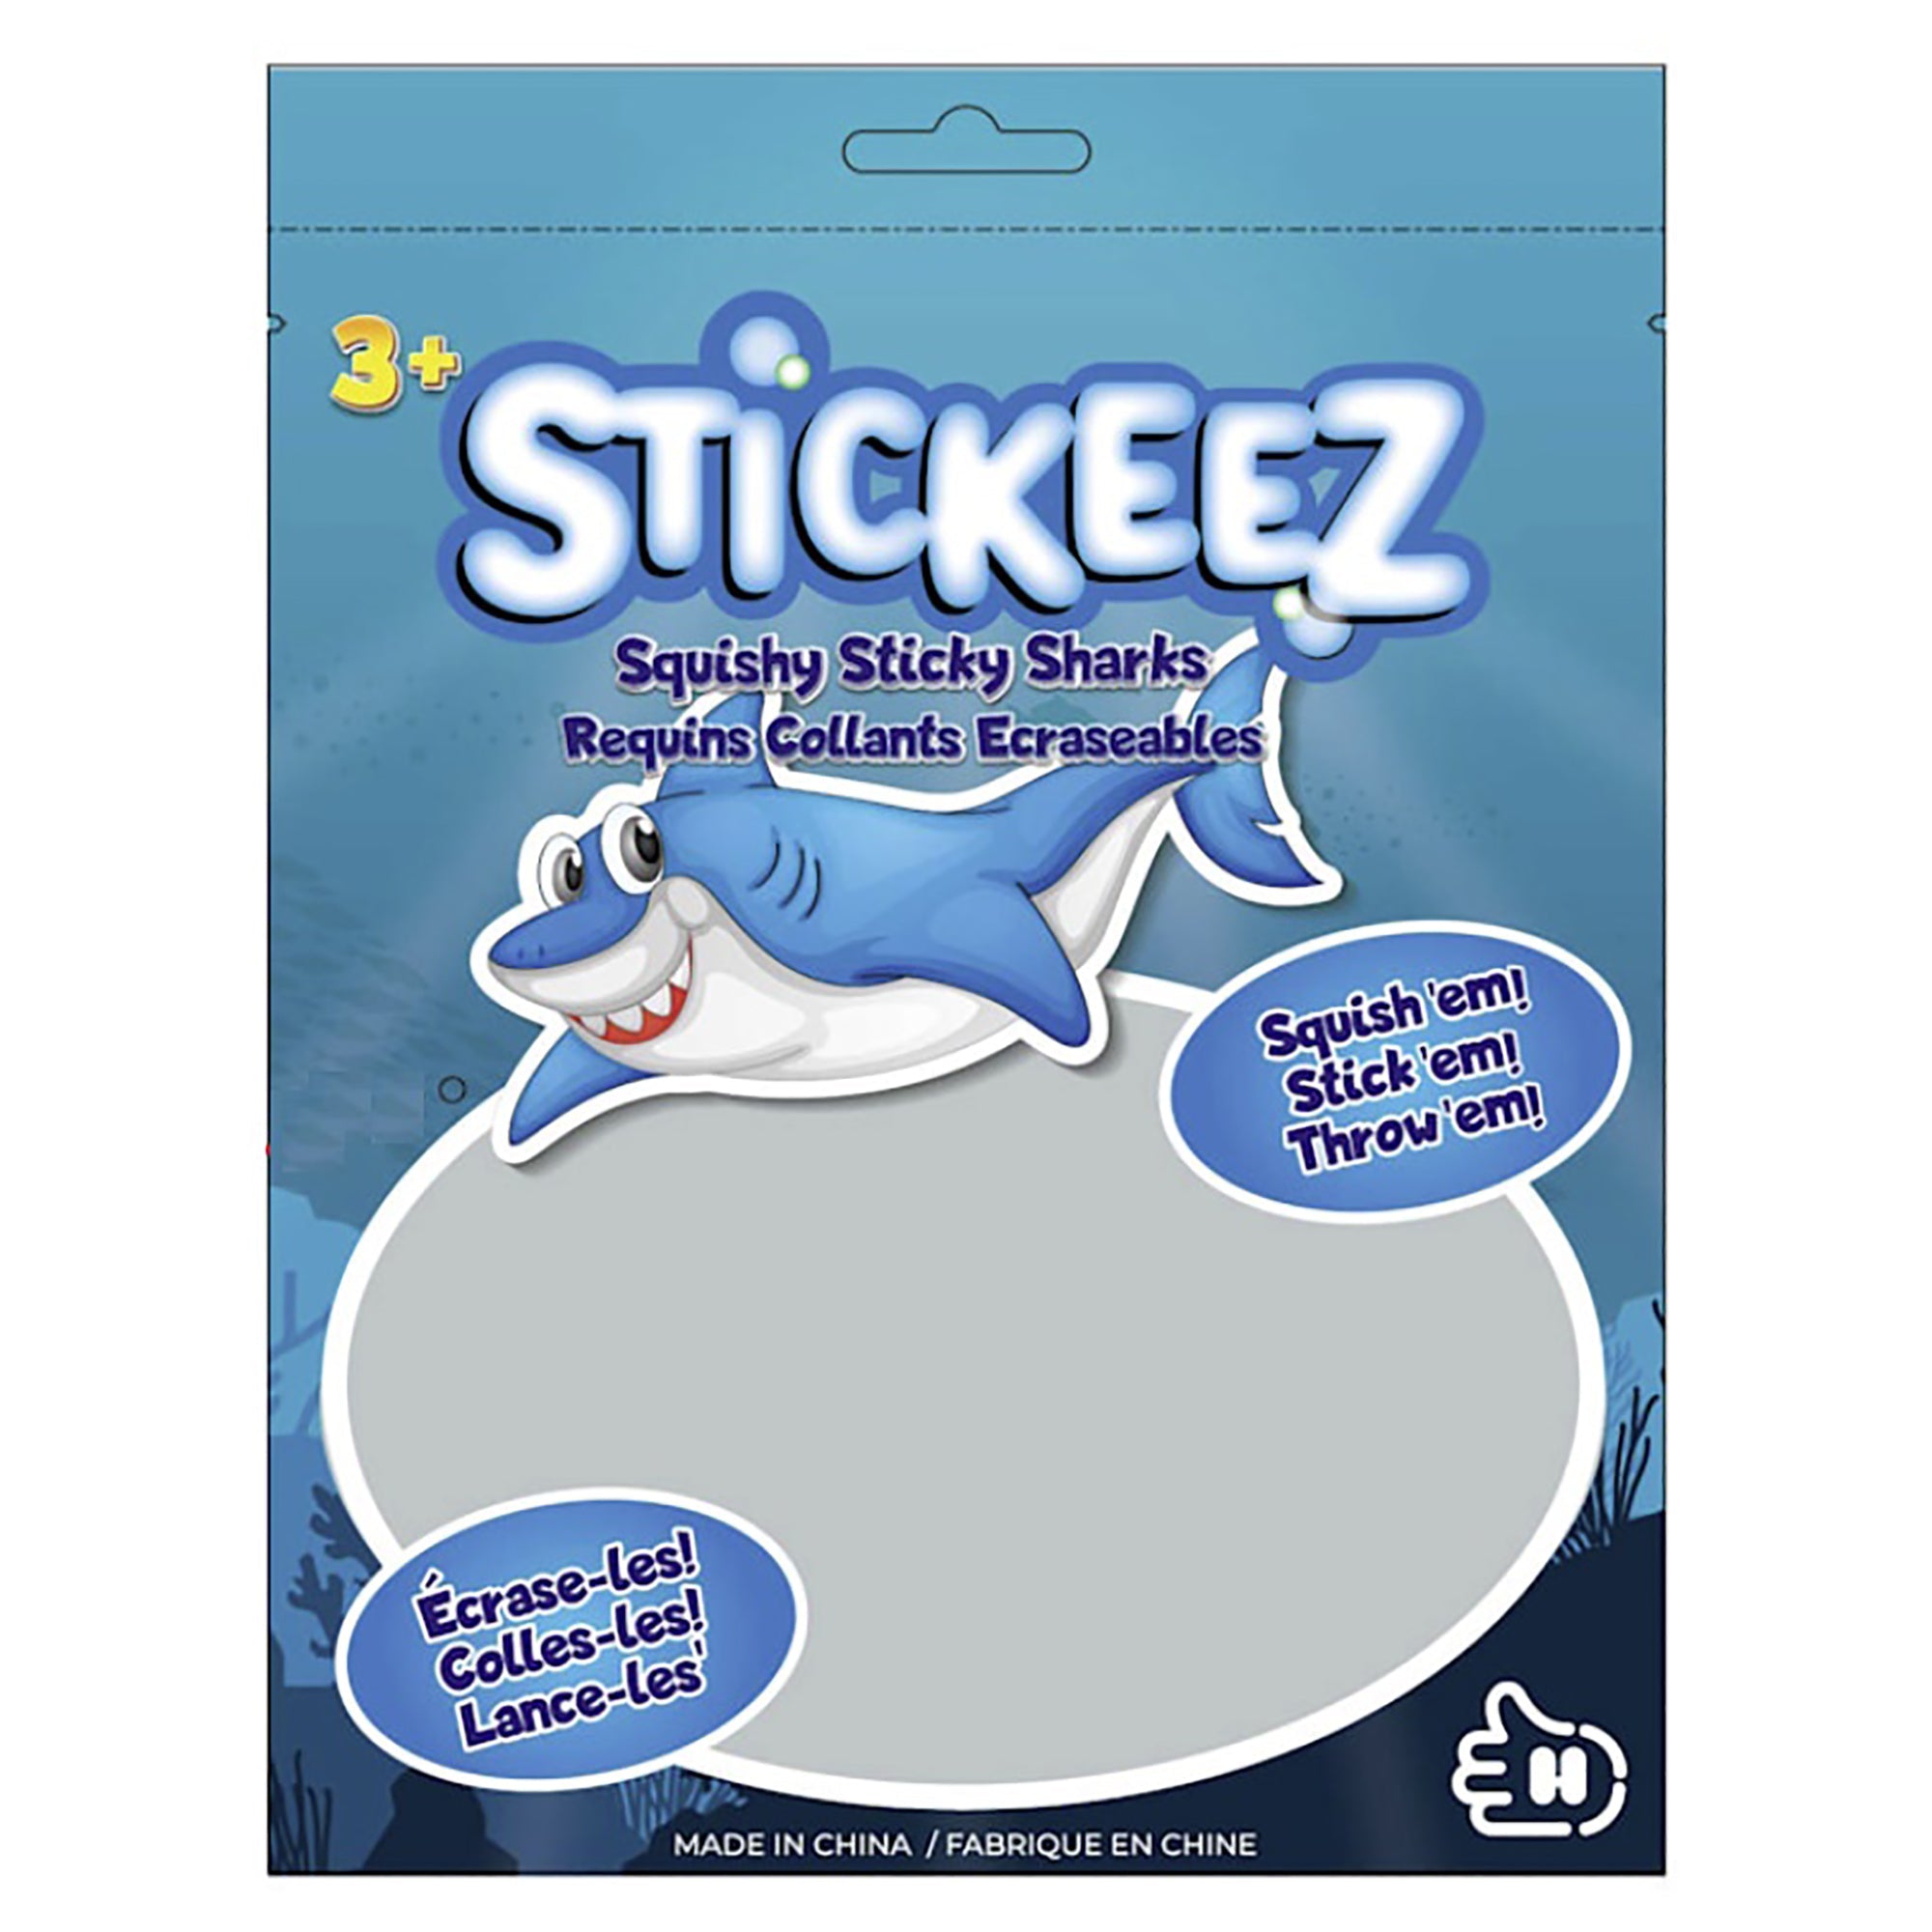 Stickeez 3 Squishy Sticky Sharks 3x2in each  3+ 